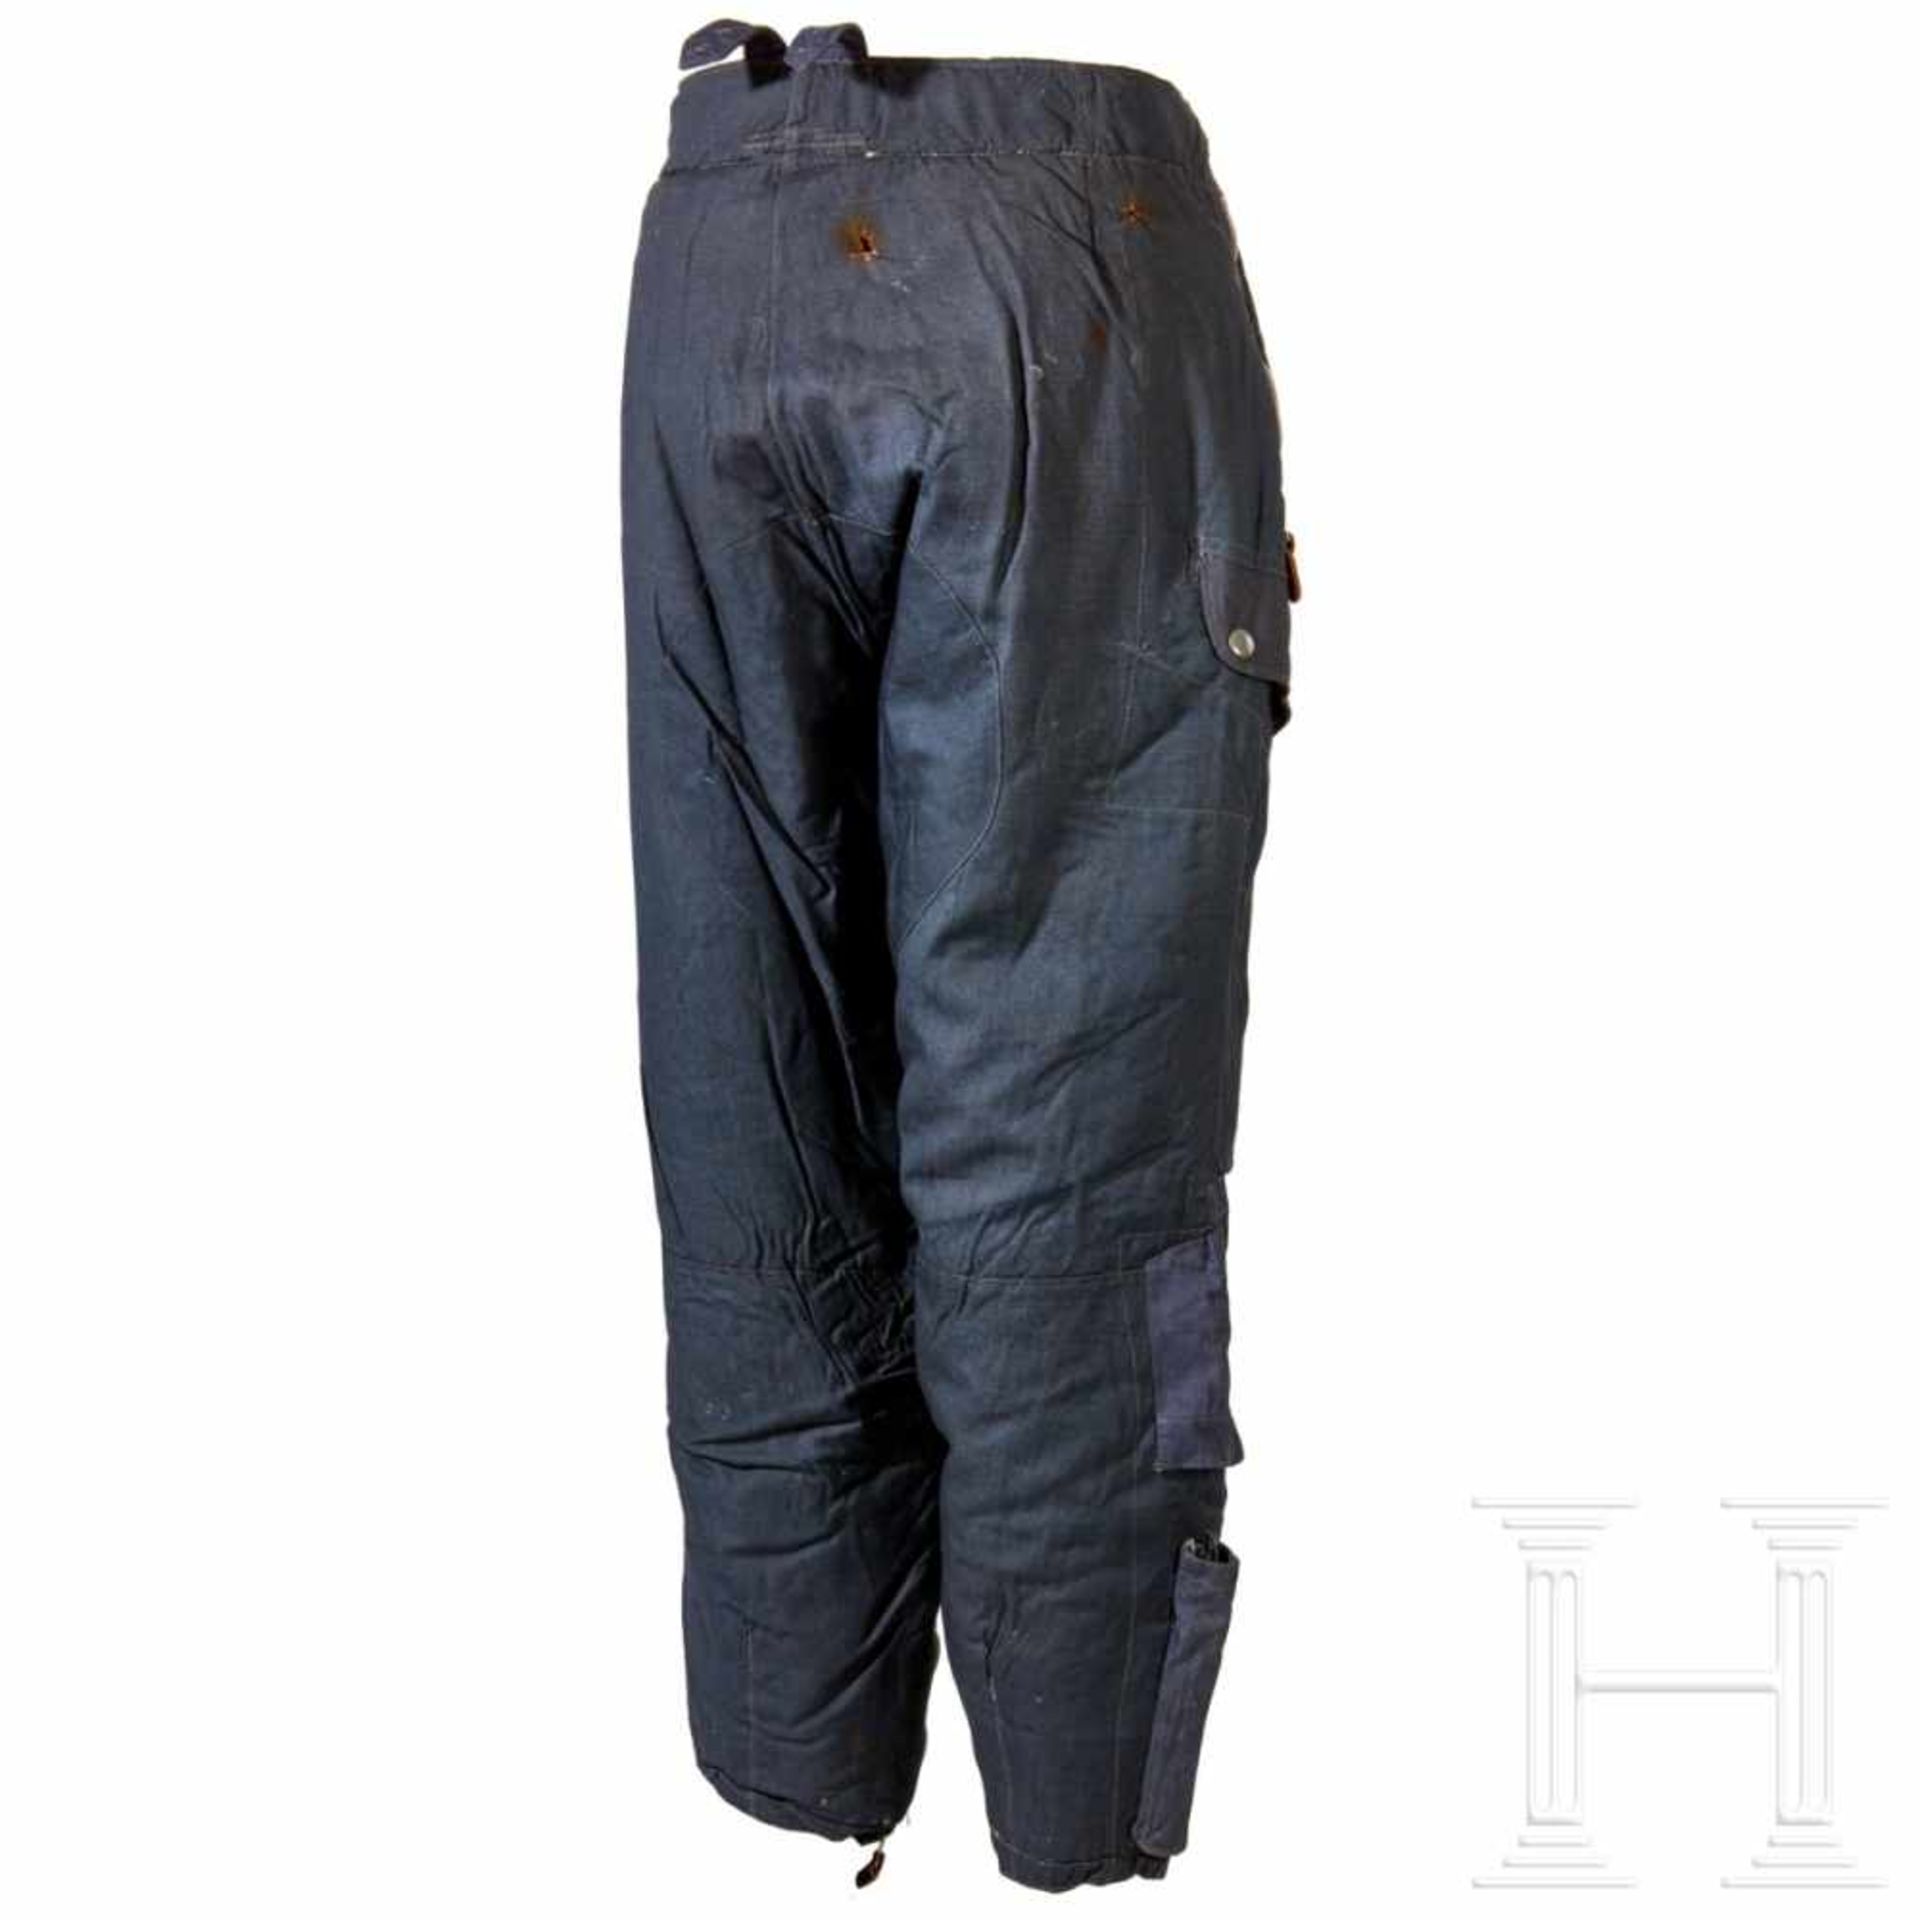 Winterhose für das fliegende PersonalBlue-grey woven cotton rayon fabric trousers, lined in dark - Bild 2 aus 6